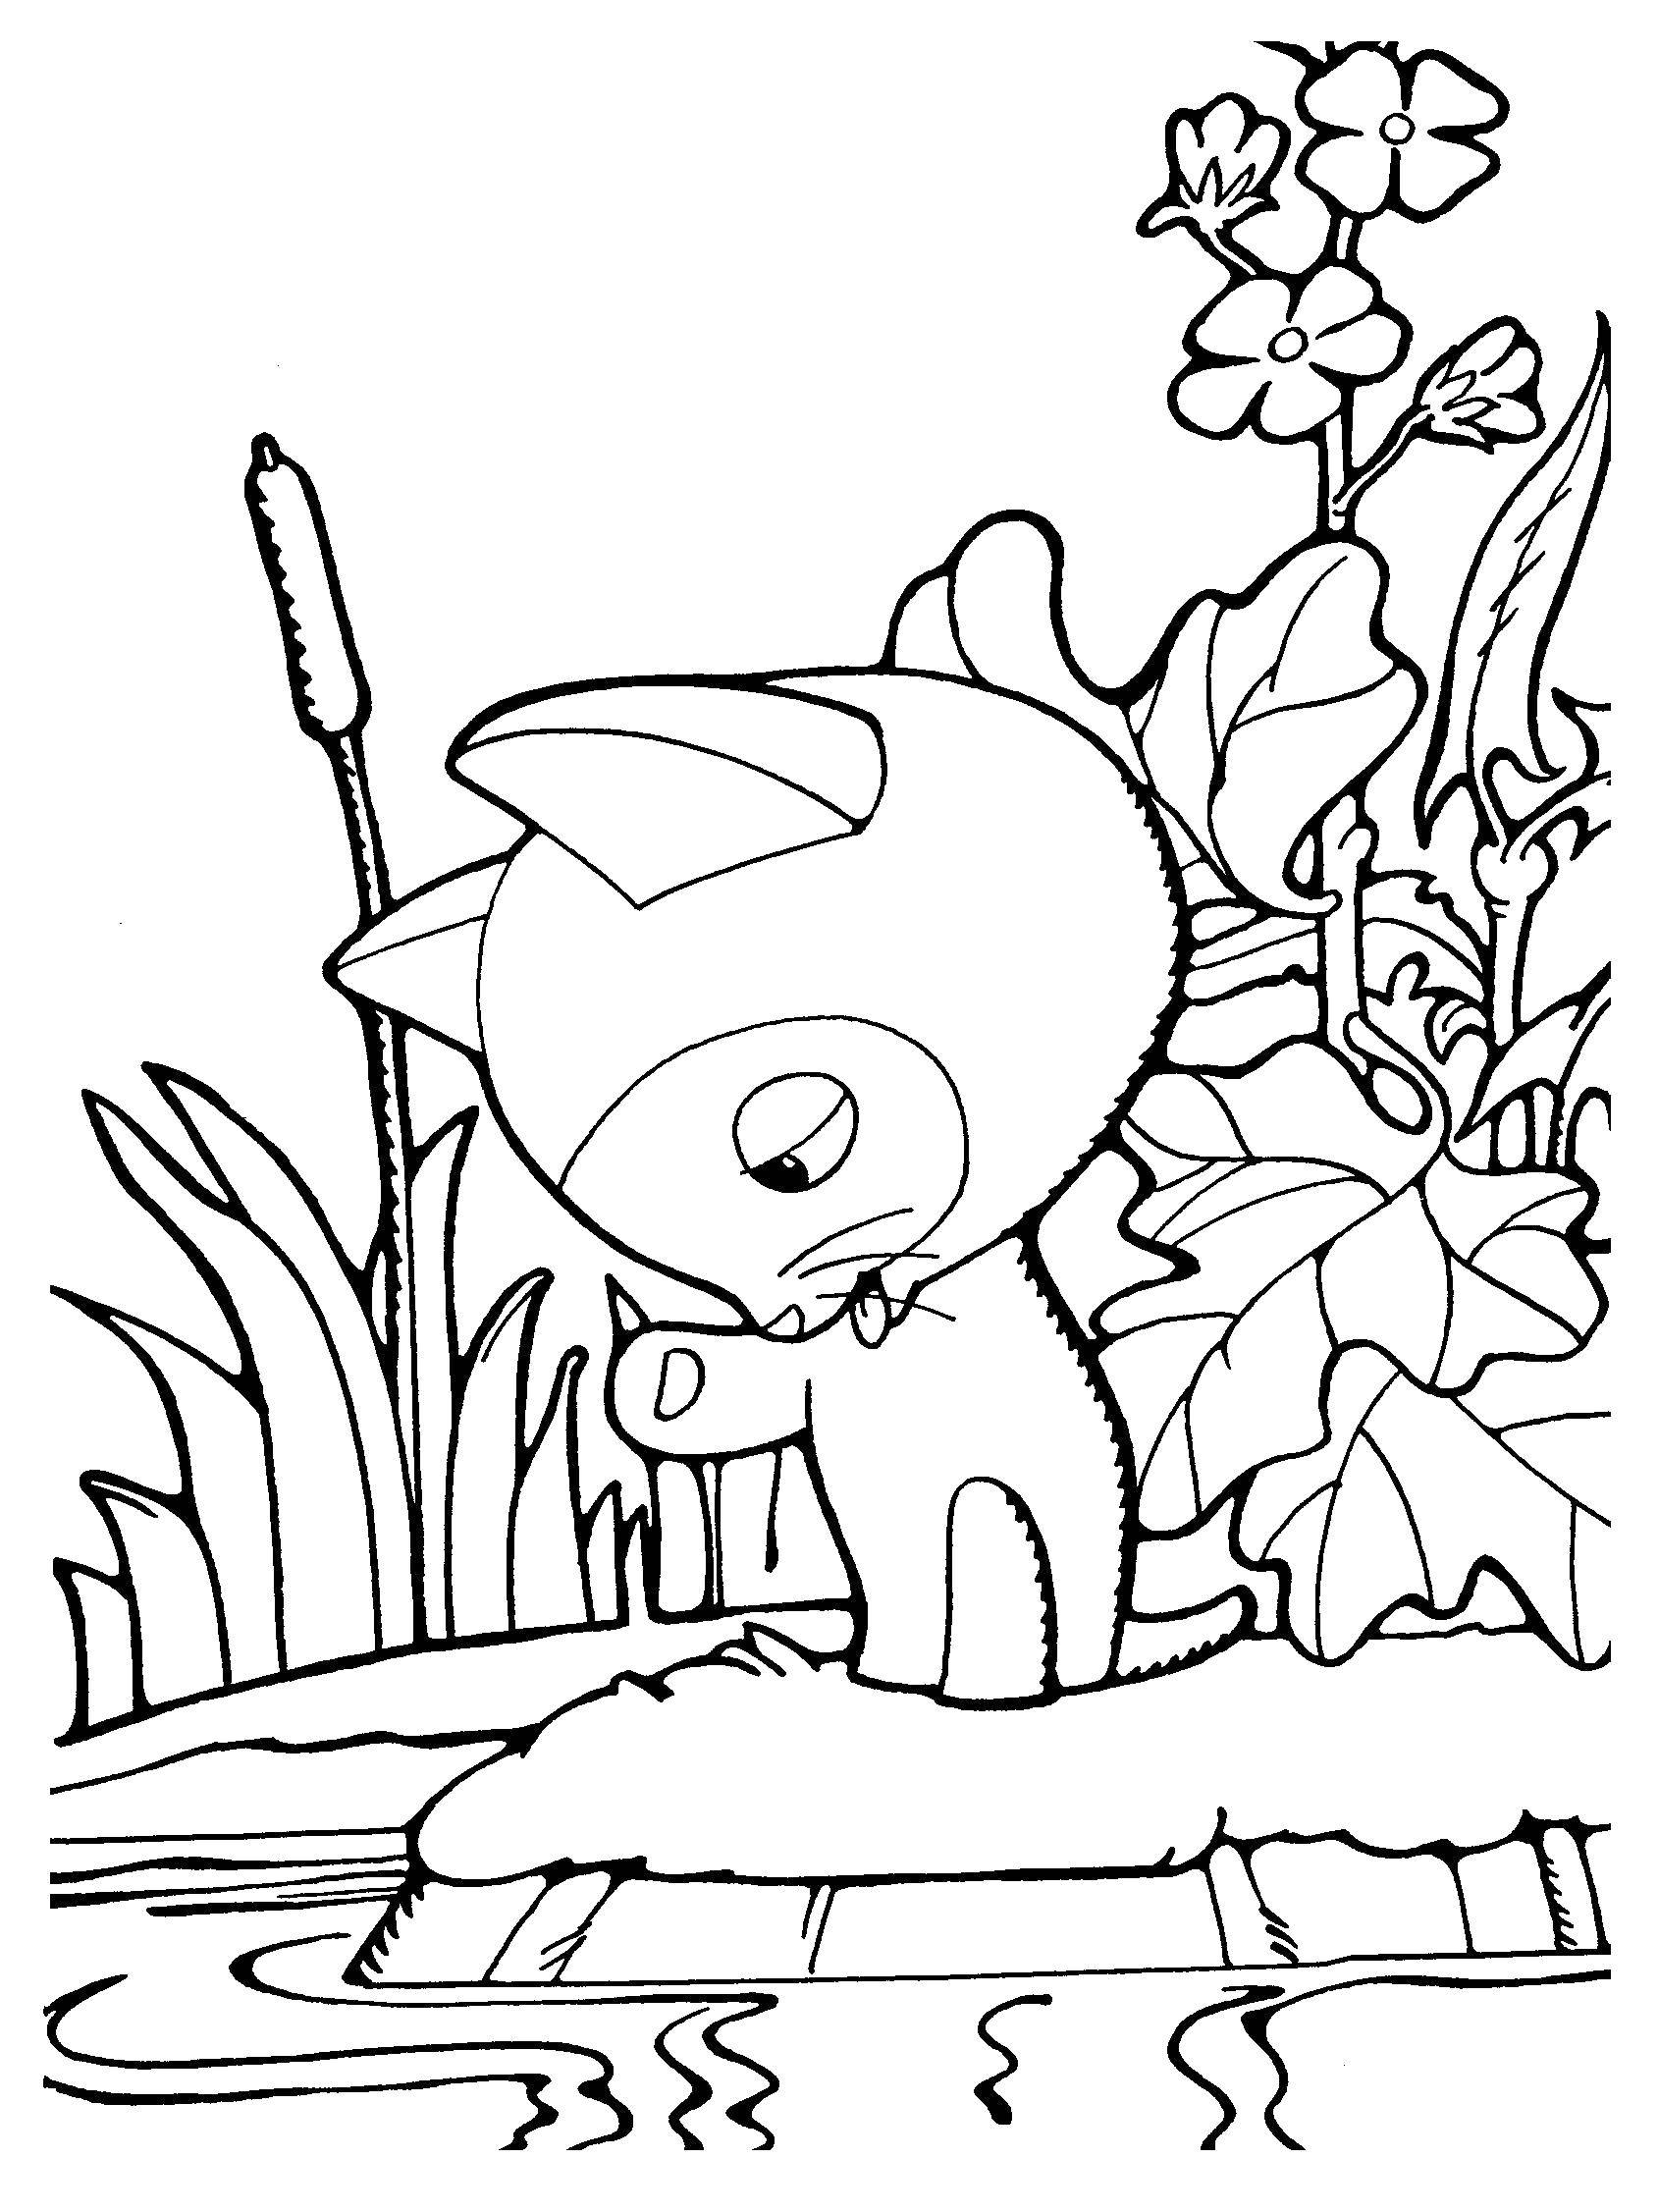 Розмальовки  Кошеня по імені гав . Завантажити розмальовку Персонаж з мультфільму, кошеня по імені Гав .  Роздрукувати ,кошеня гав,